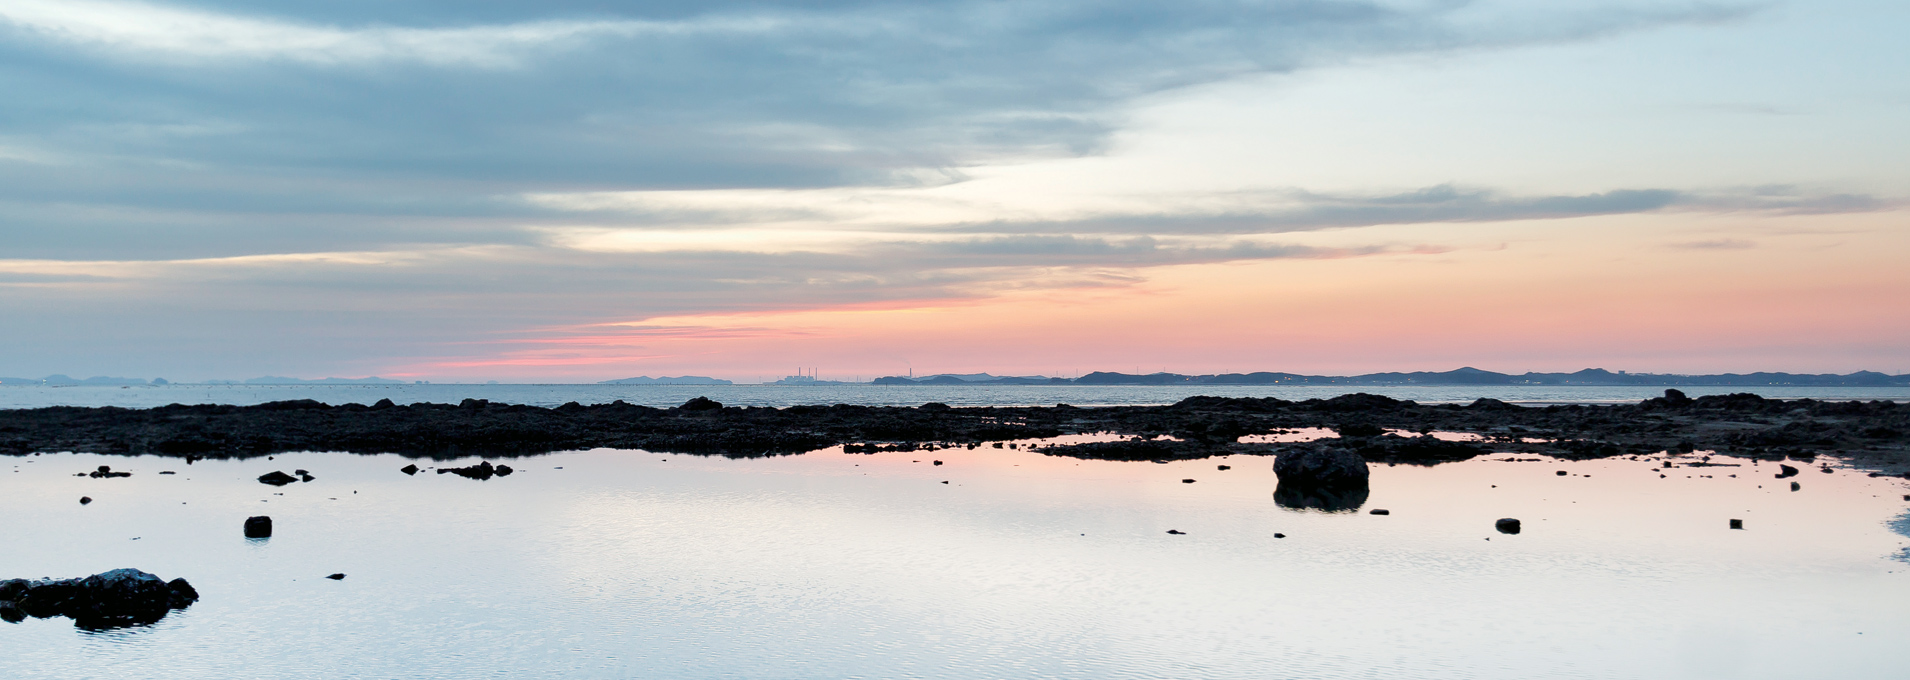 경포 해변이 보이는 우리나라 대표 석호, 경포호의 전경